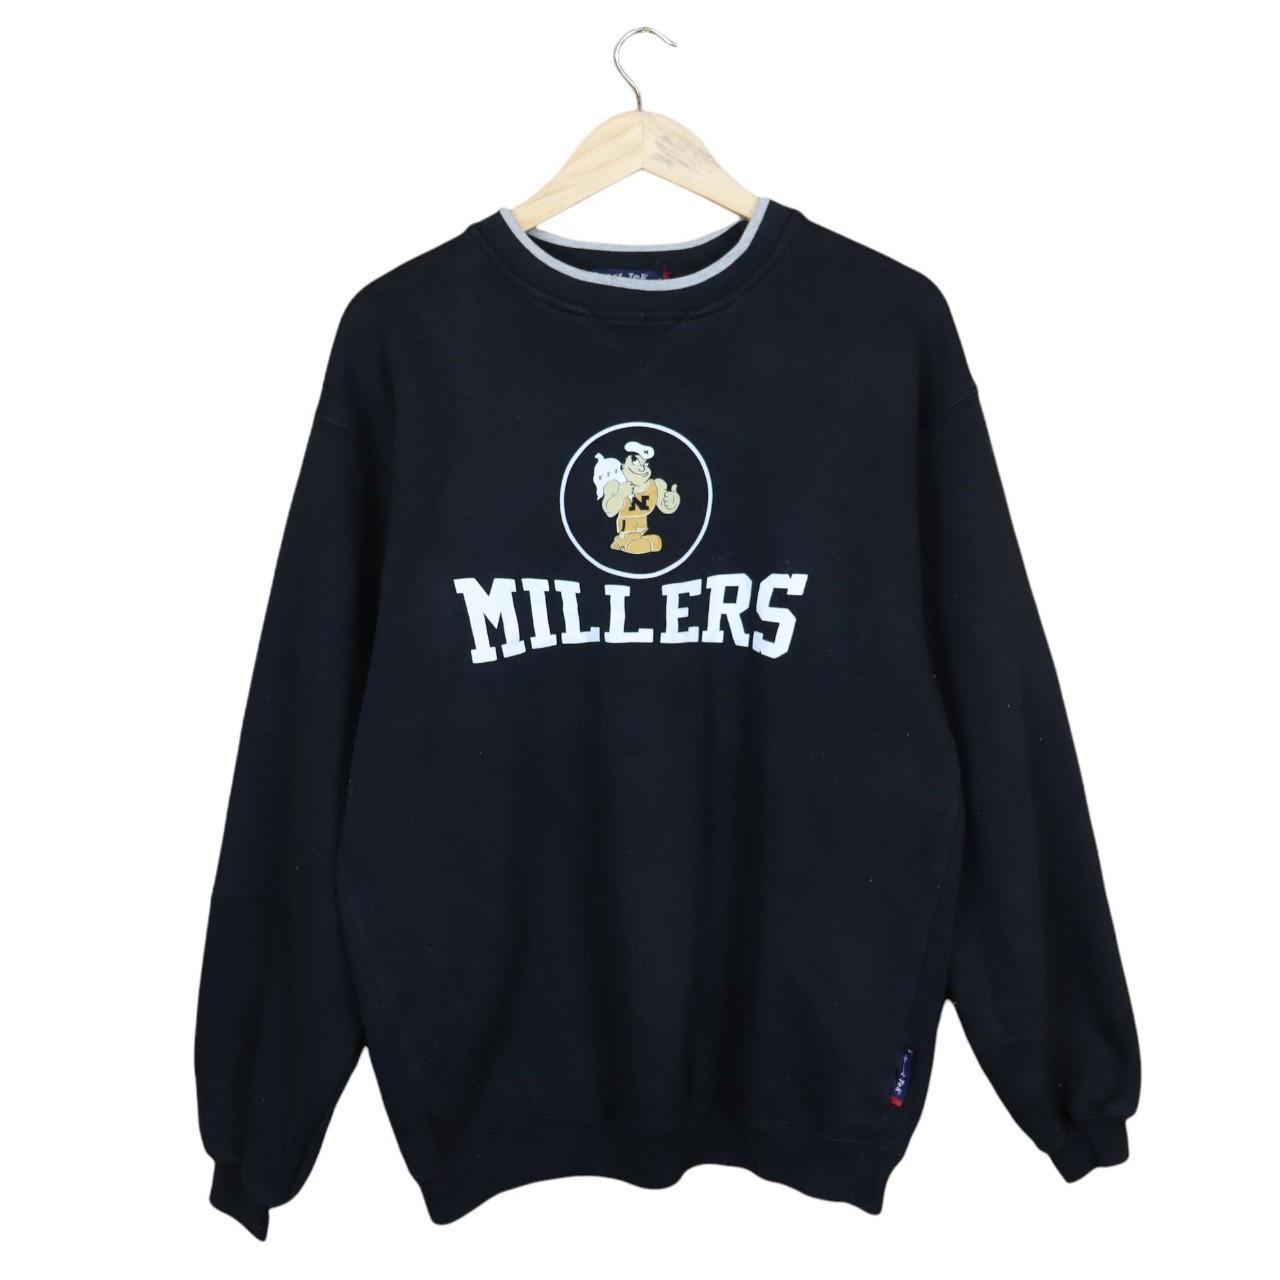 Vintage Millers American College Football Sweatshirt... - Depop